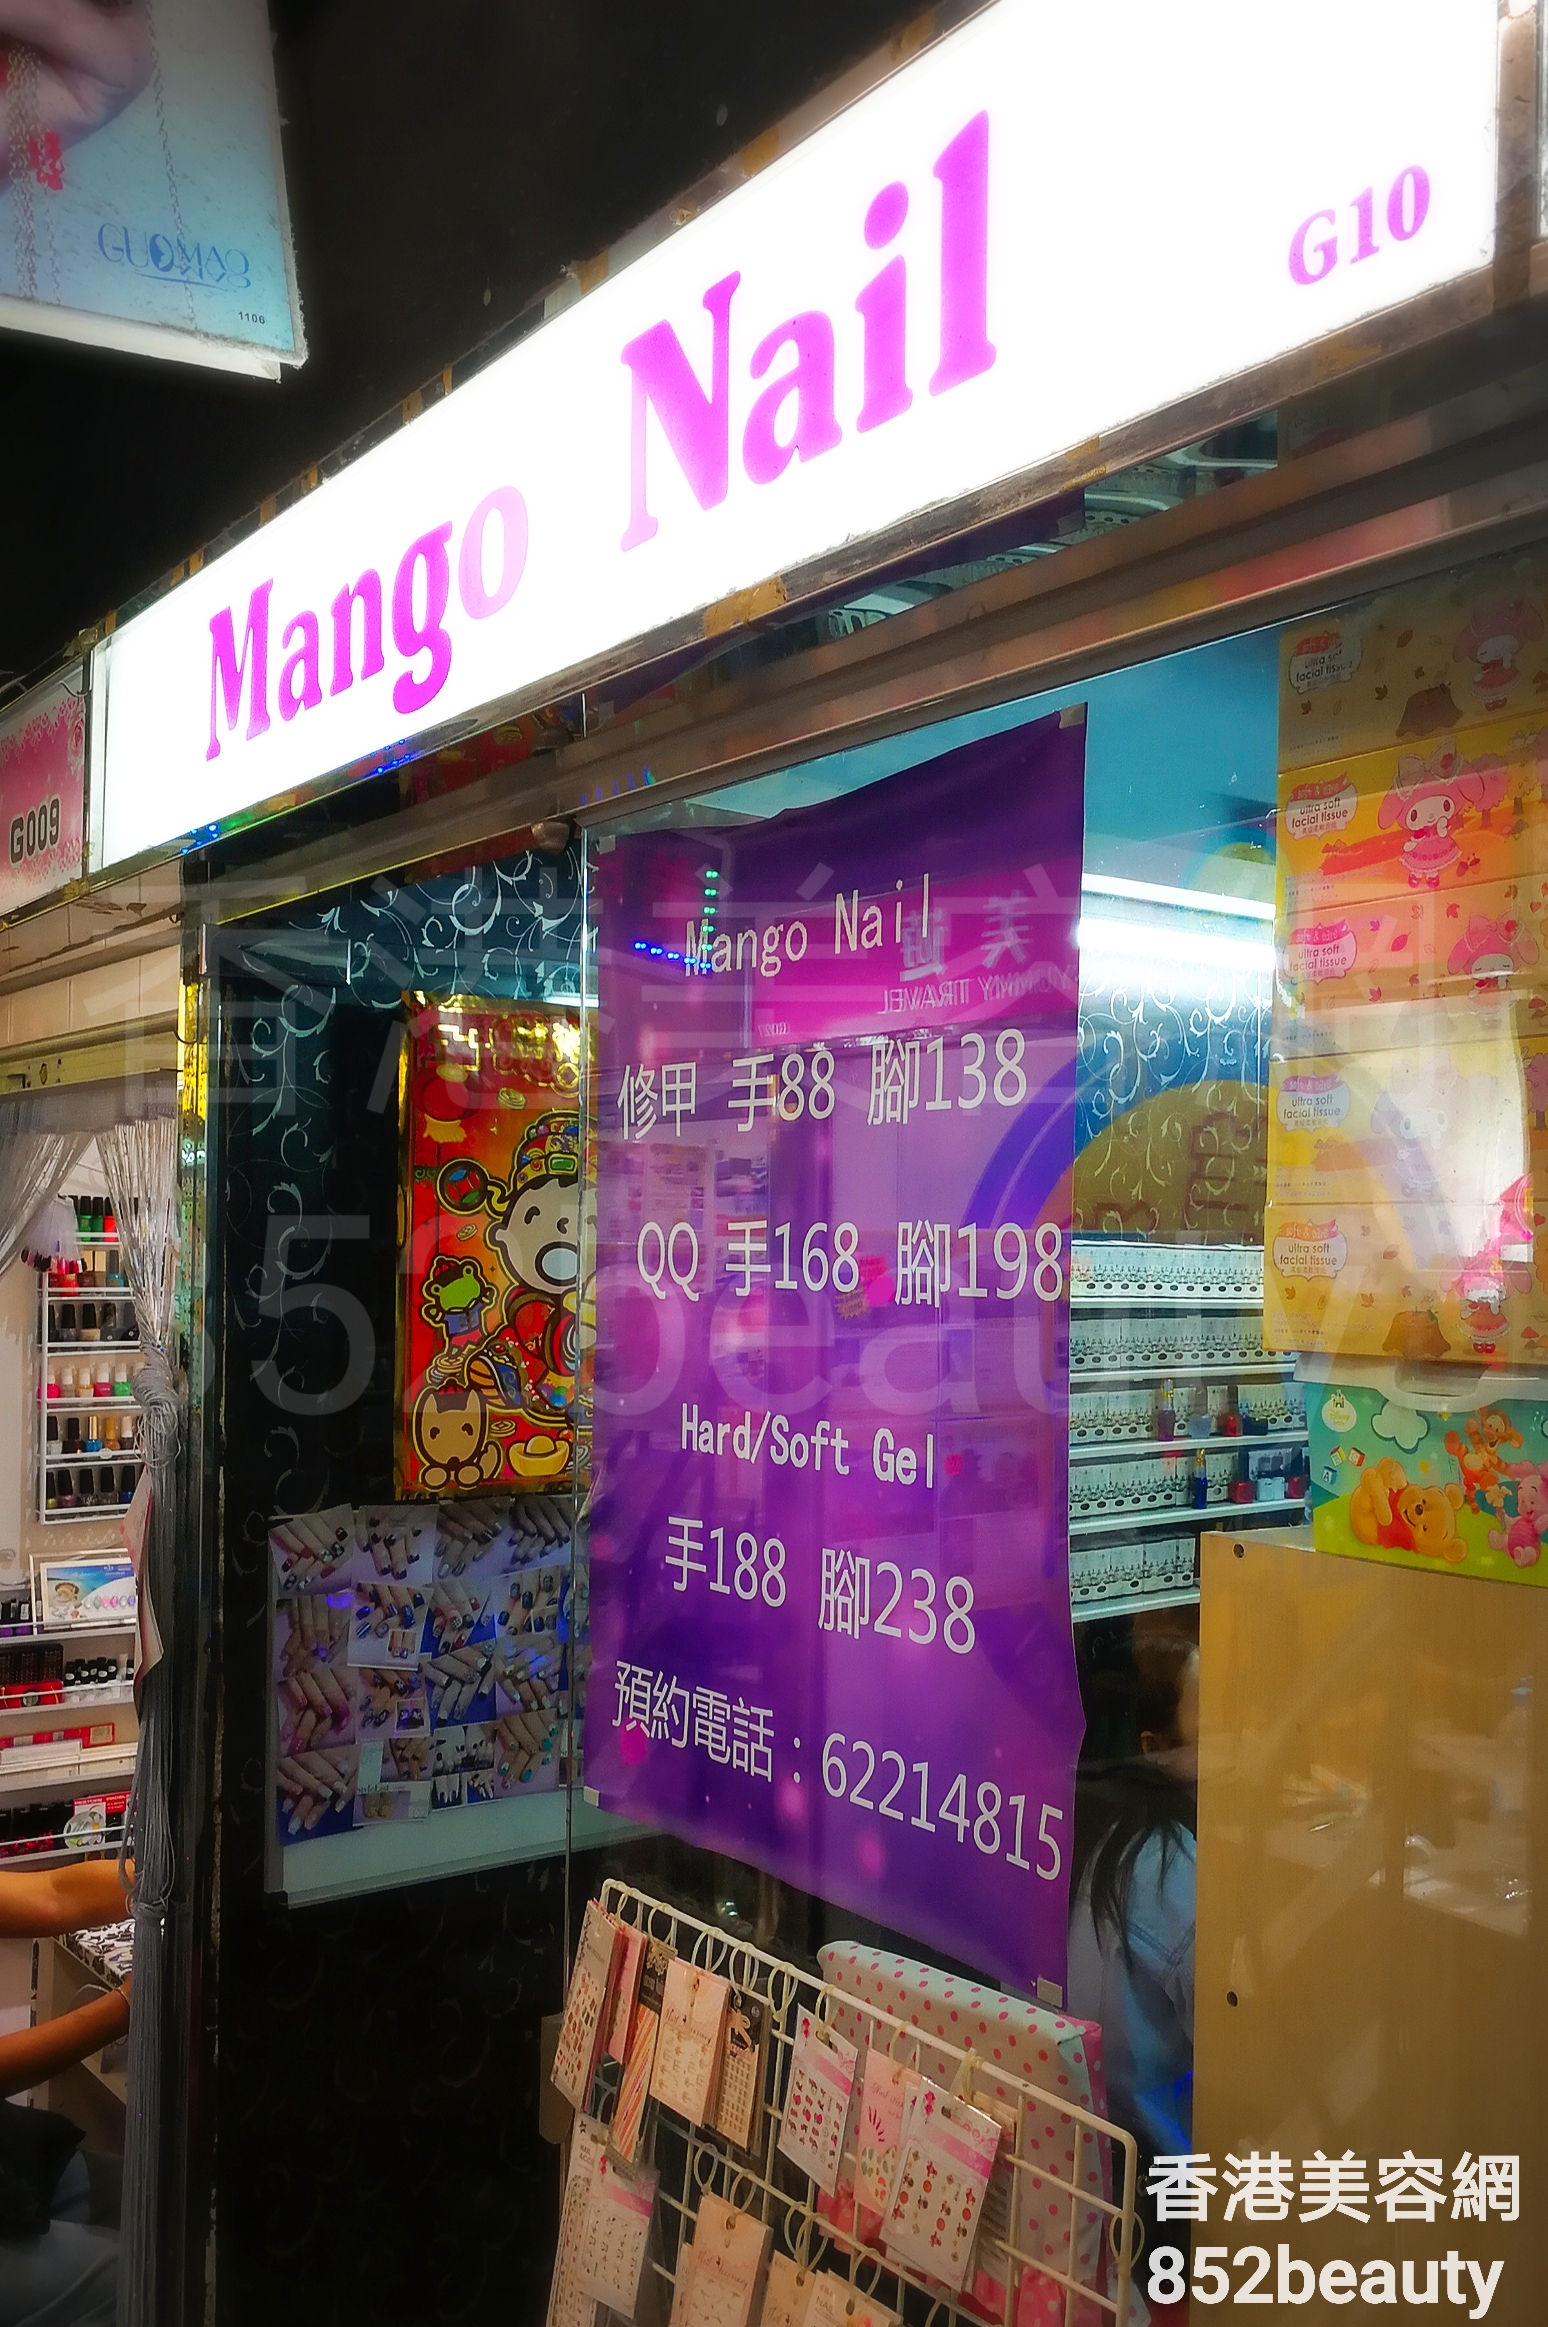 香港美容網 Hong Kong Beauty Salon 美容院 / 美容師: Mango Nail